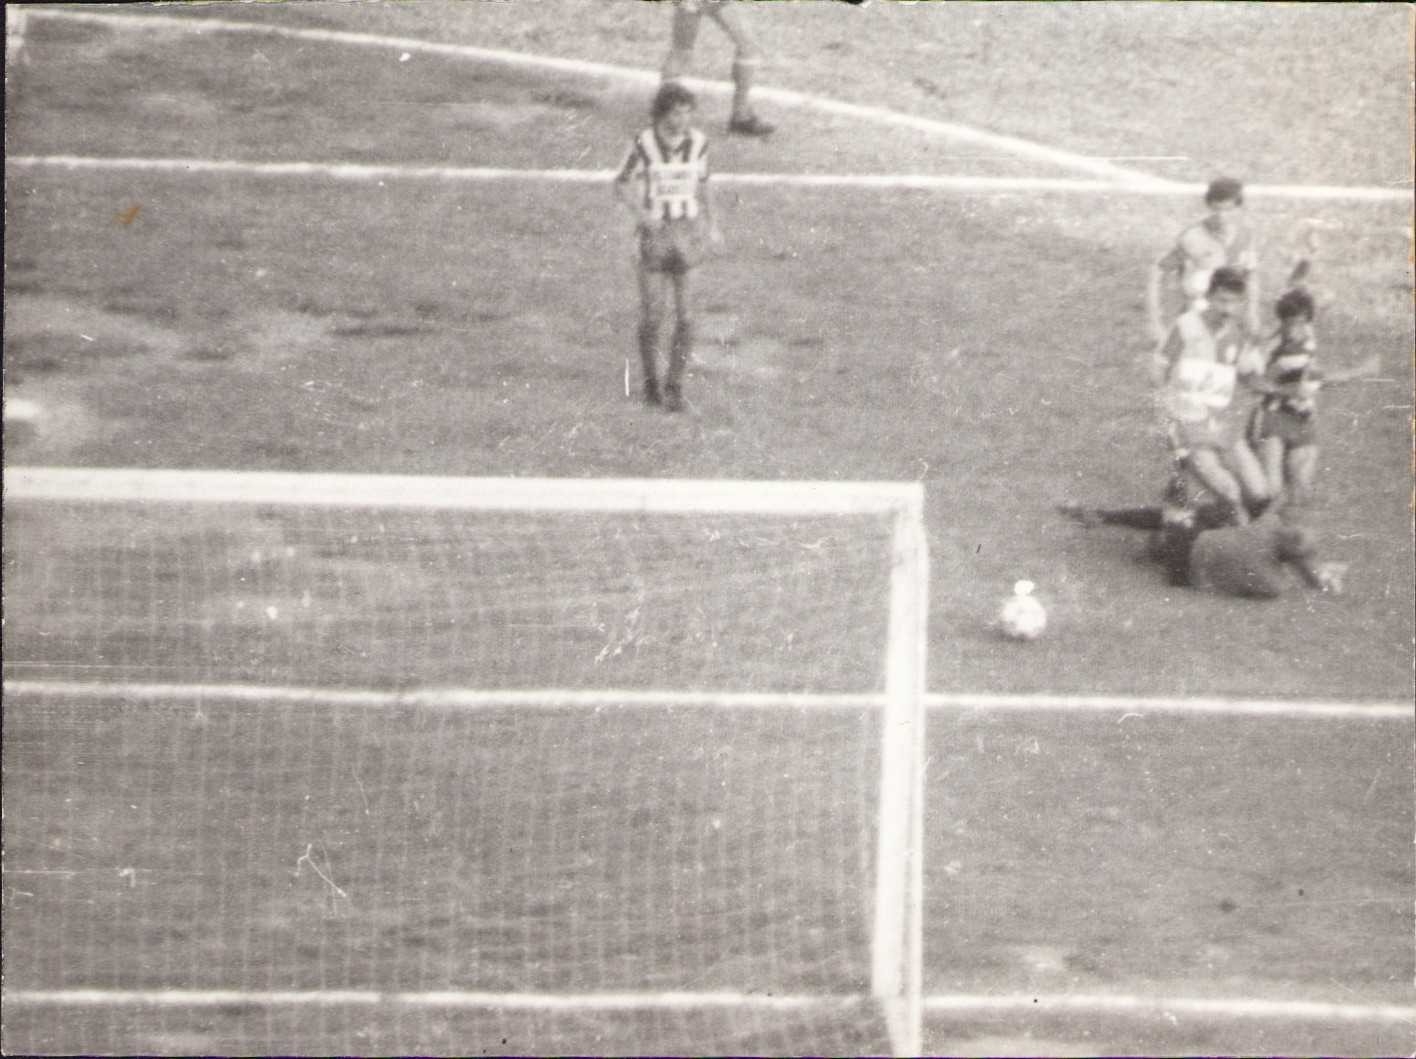 1981 yılında Fenerbahçe ve Galatasaray futbol takımları arasında İnönü Stadyumu'nda oynanan TSYD [Türkiye Spor Yazarları Derneği] Kupası final müsabakasına ait fotoğraflar, 12 adet, 12x9 cm.